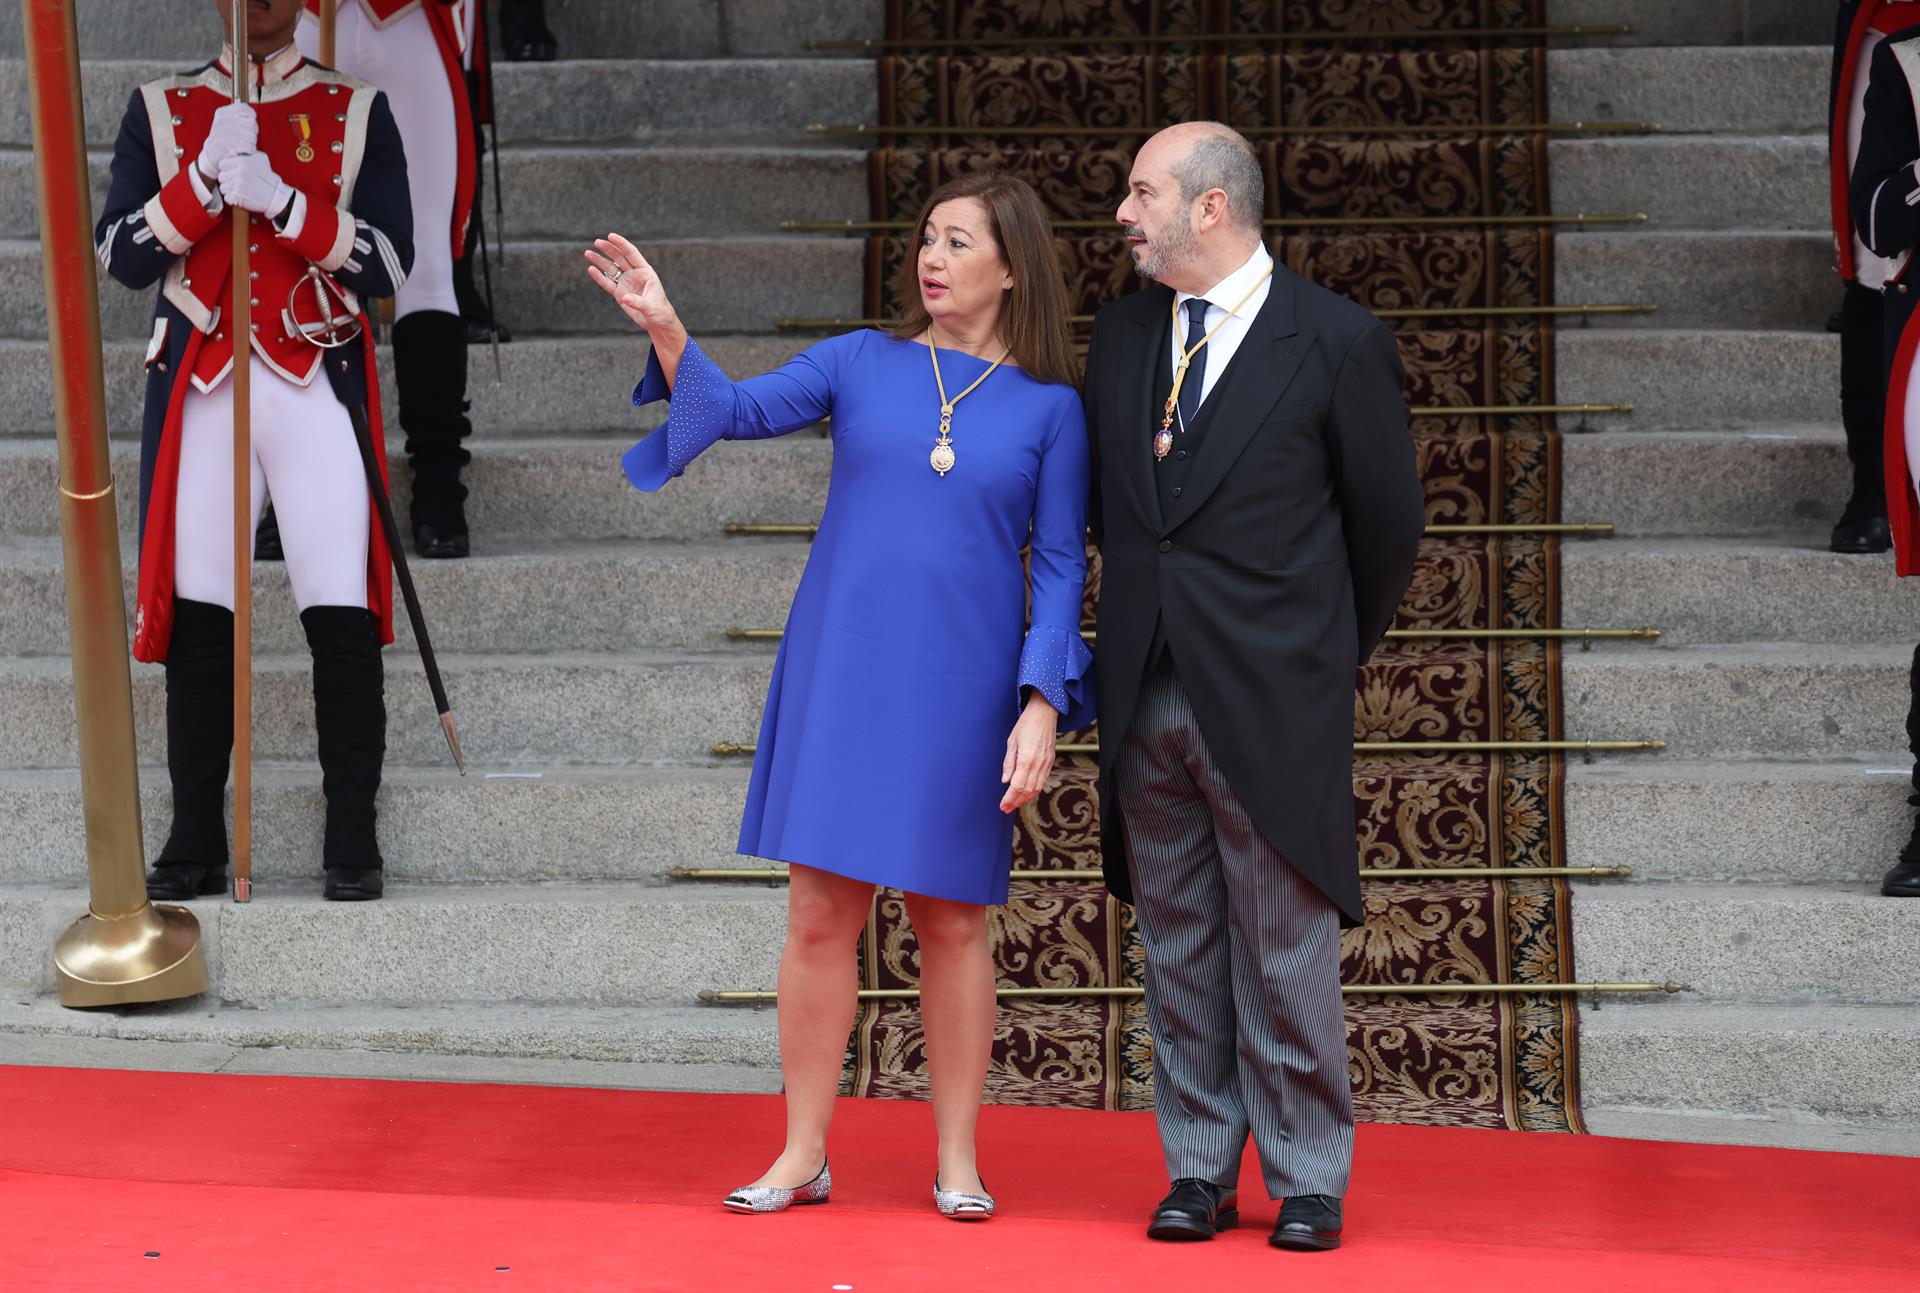 La Presidenta del Congreso de los Diputados, Francina Armengol, y el Presidente del Senado, Pedro Rollán Ojeda. - Raúl Terrel - Europa Press